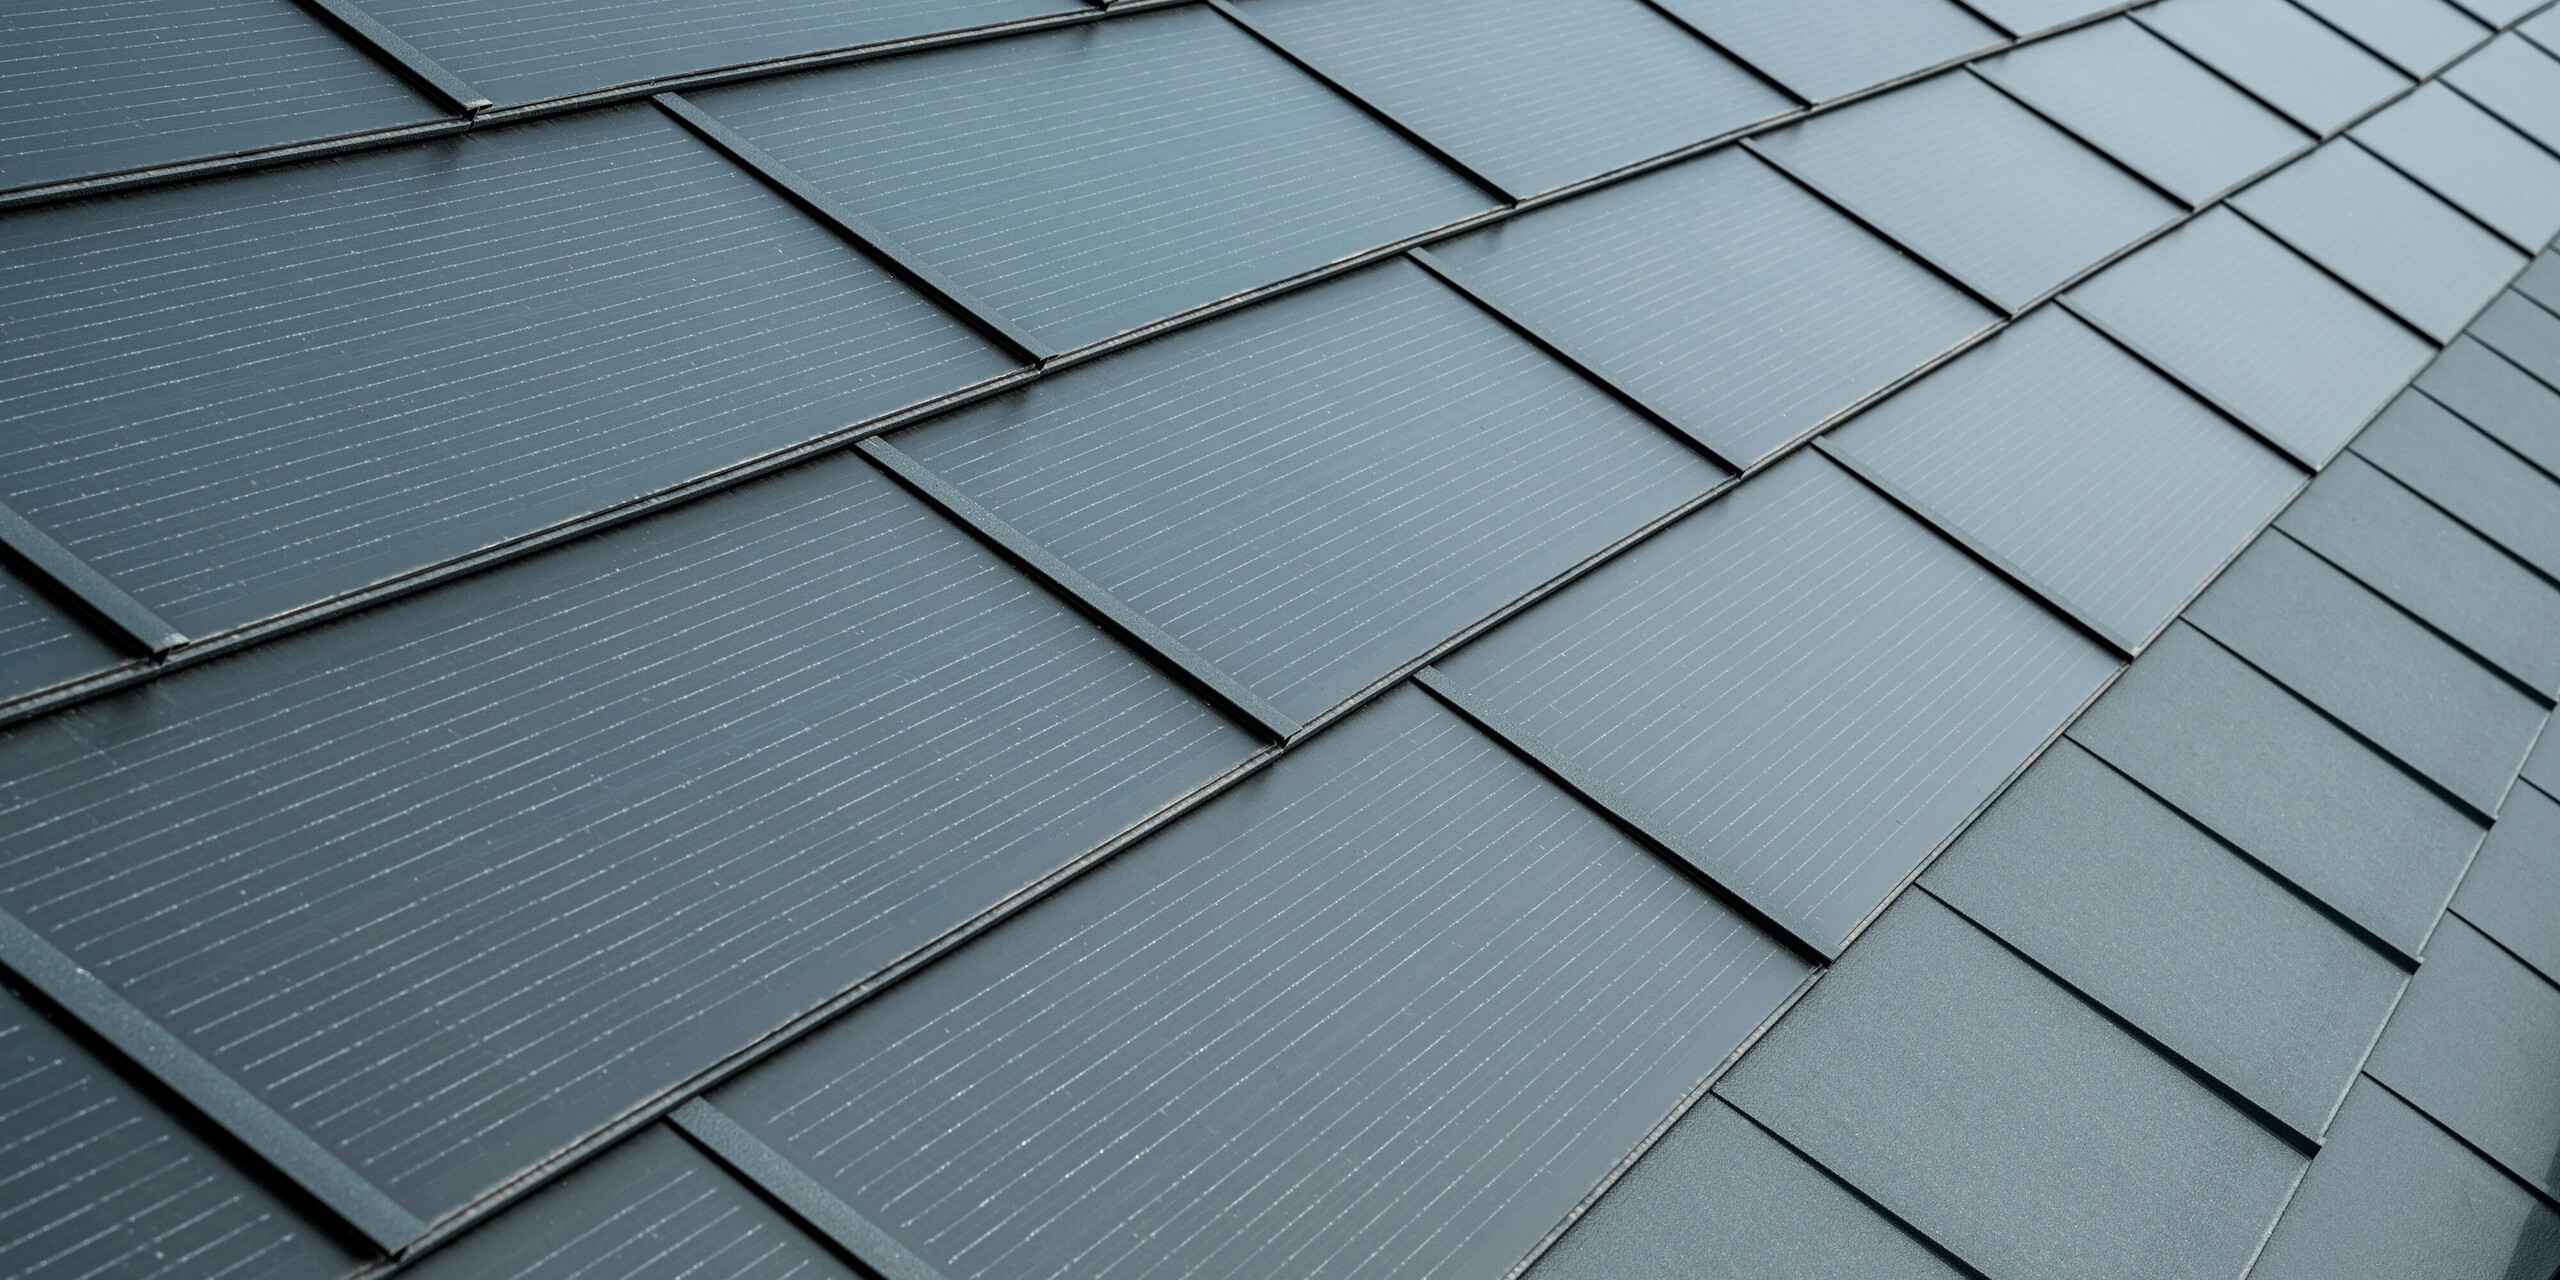 Nahaufnahme eines Daches mit PREFA Solardachplatten in Anthrazit. Die Solarmodule sind elegant in das Dach integriert, wodurch sie sich harmonisch in das Gesamtbild einfügen. Die Dachplatten zeigen eine strukturierte Oberfläche mit feinen Linien, die für zusätzliche Ästhetik sorgen, während sie gleichzeitig als funktionale, energieeffiziente Lösung dienen.